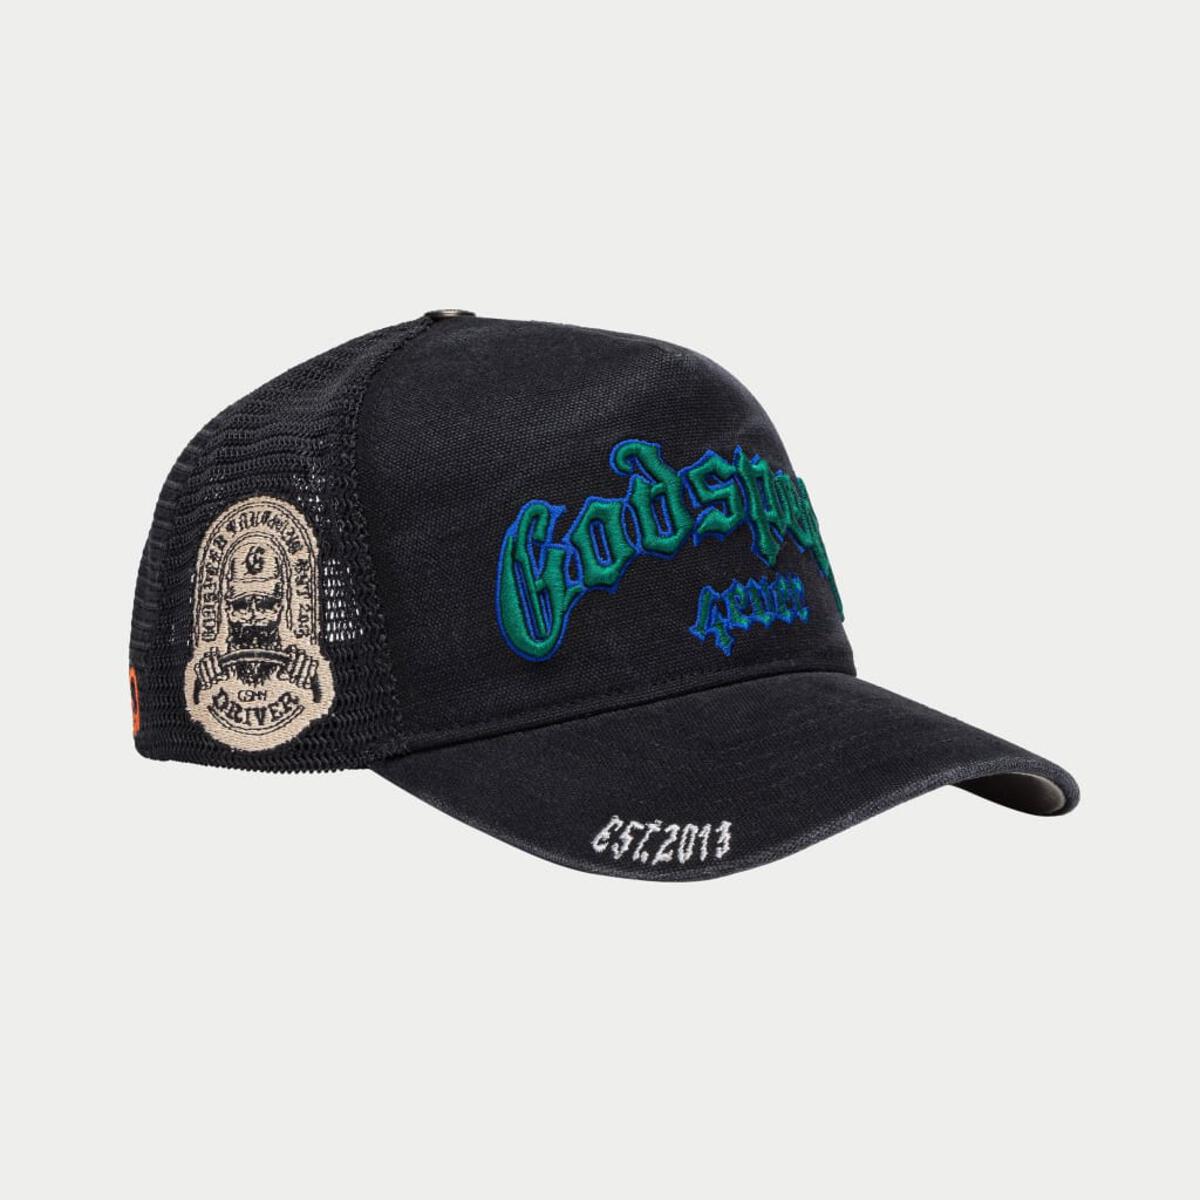 Godspeed Forever Trucker Hat